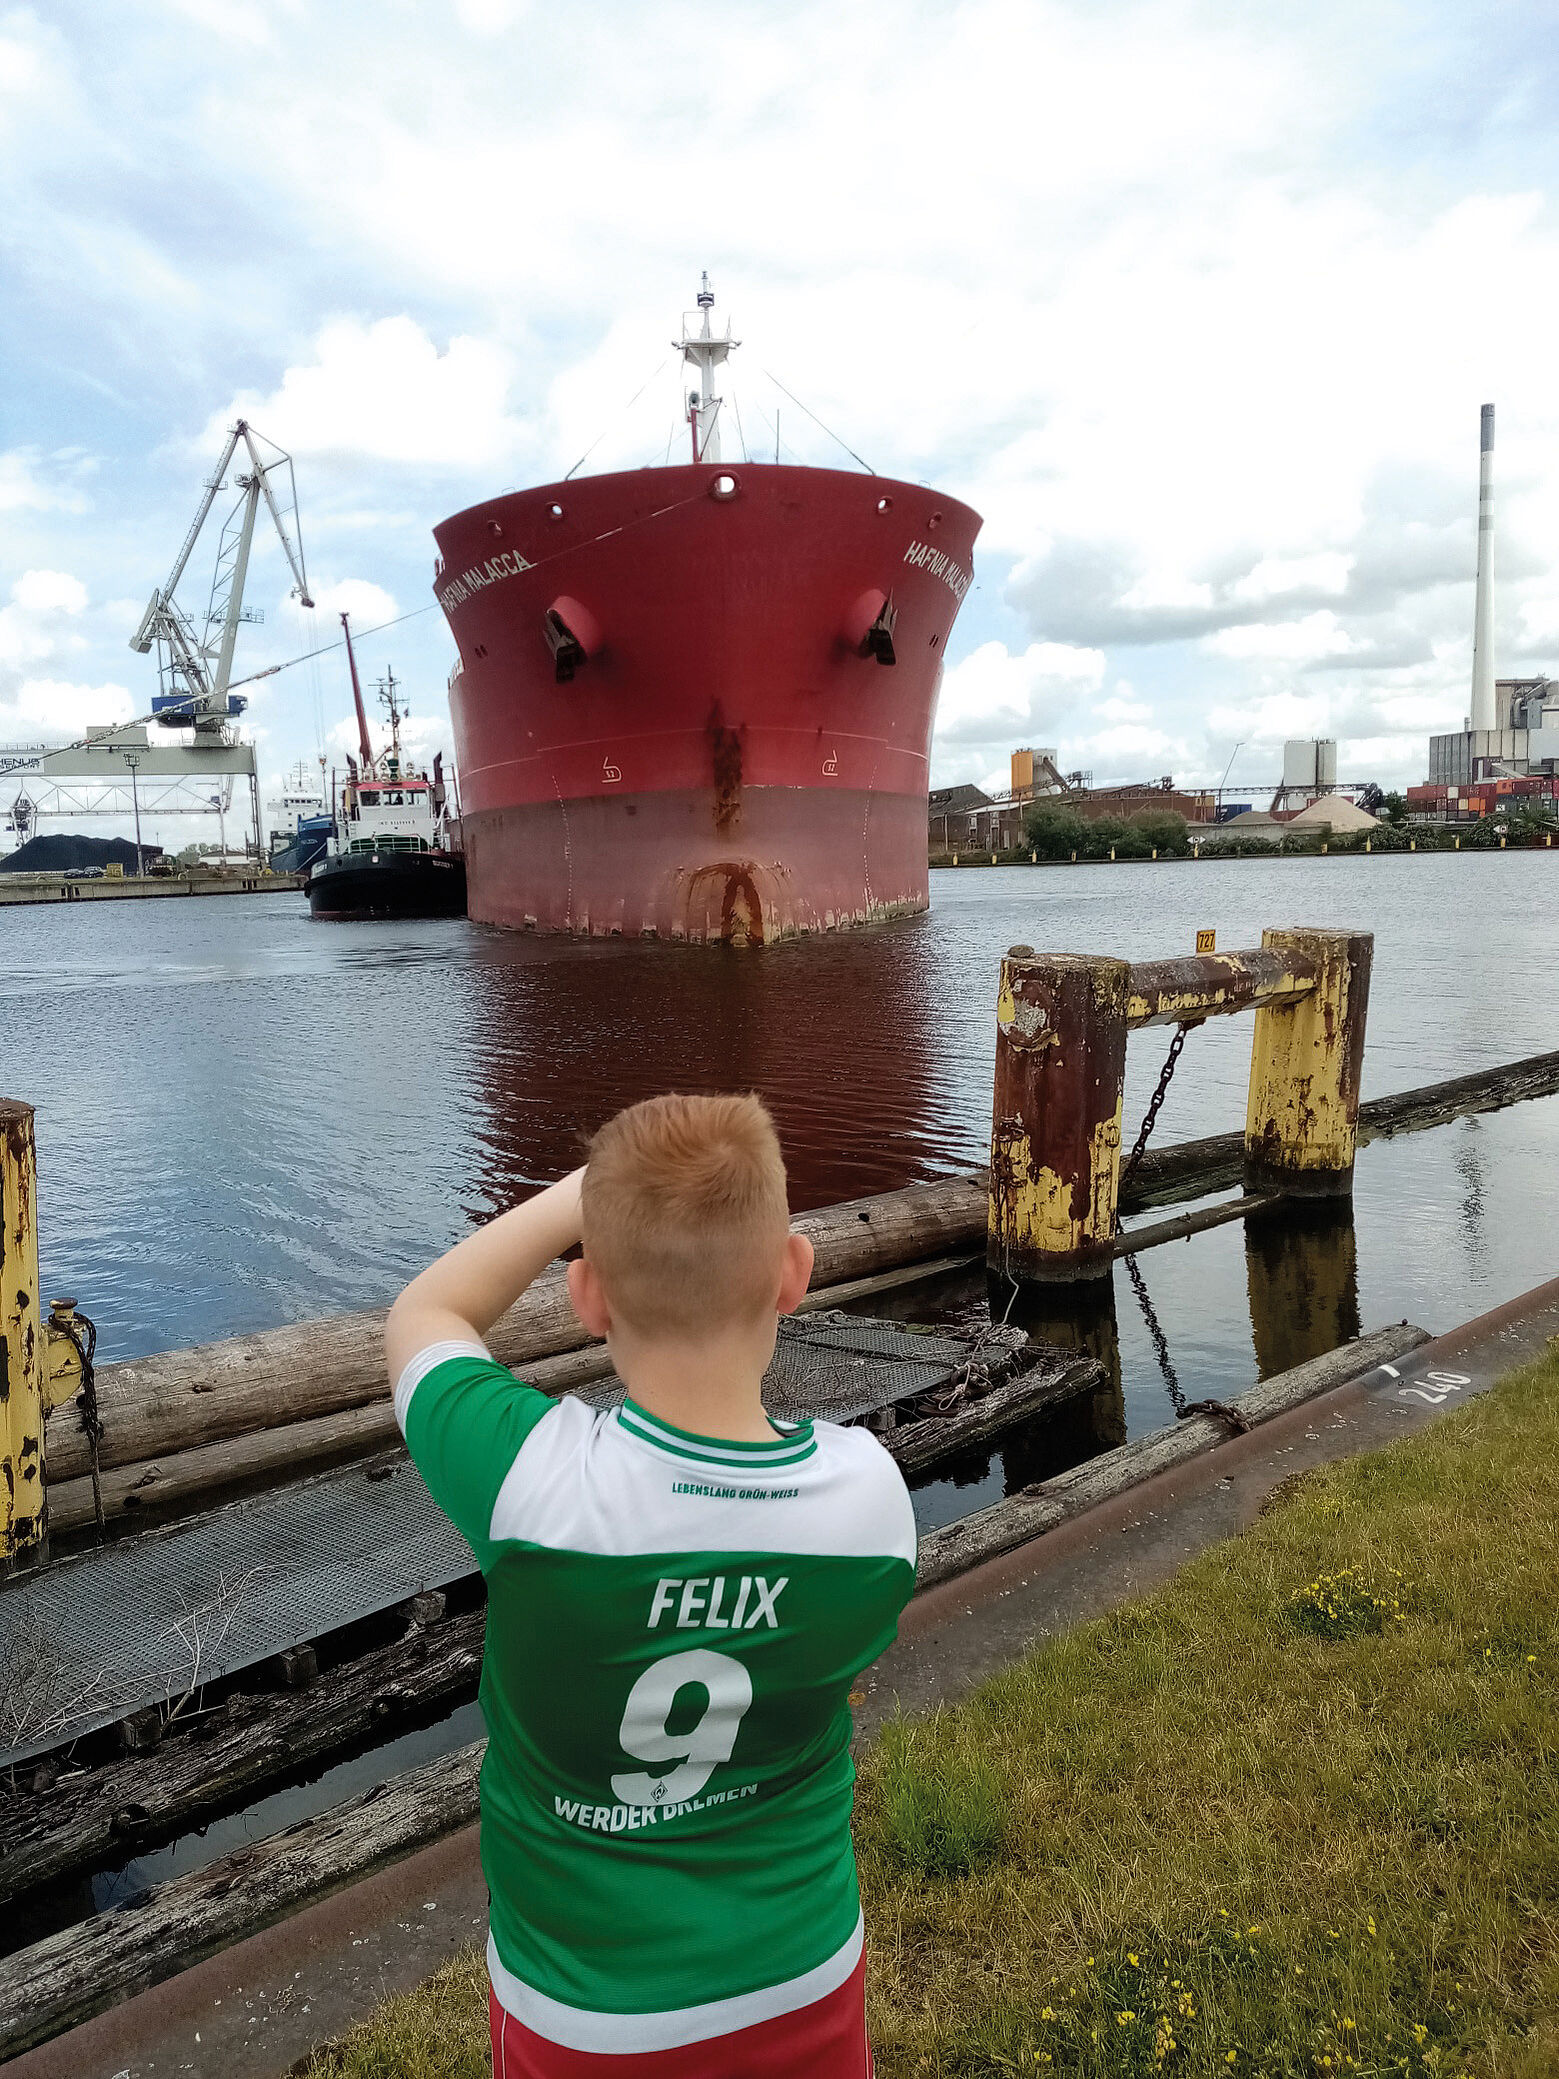 Kleiner Junge mit grünen Tshirt macht Fortos von einem großen Containerschiff, das frontal vor ihm im Wasser steht